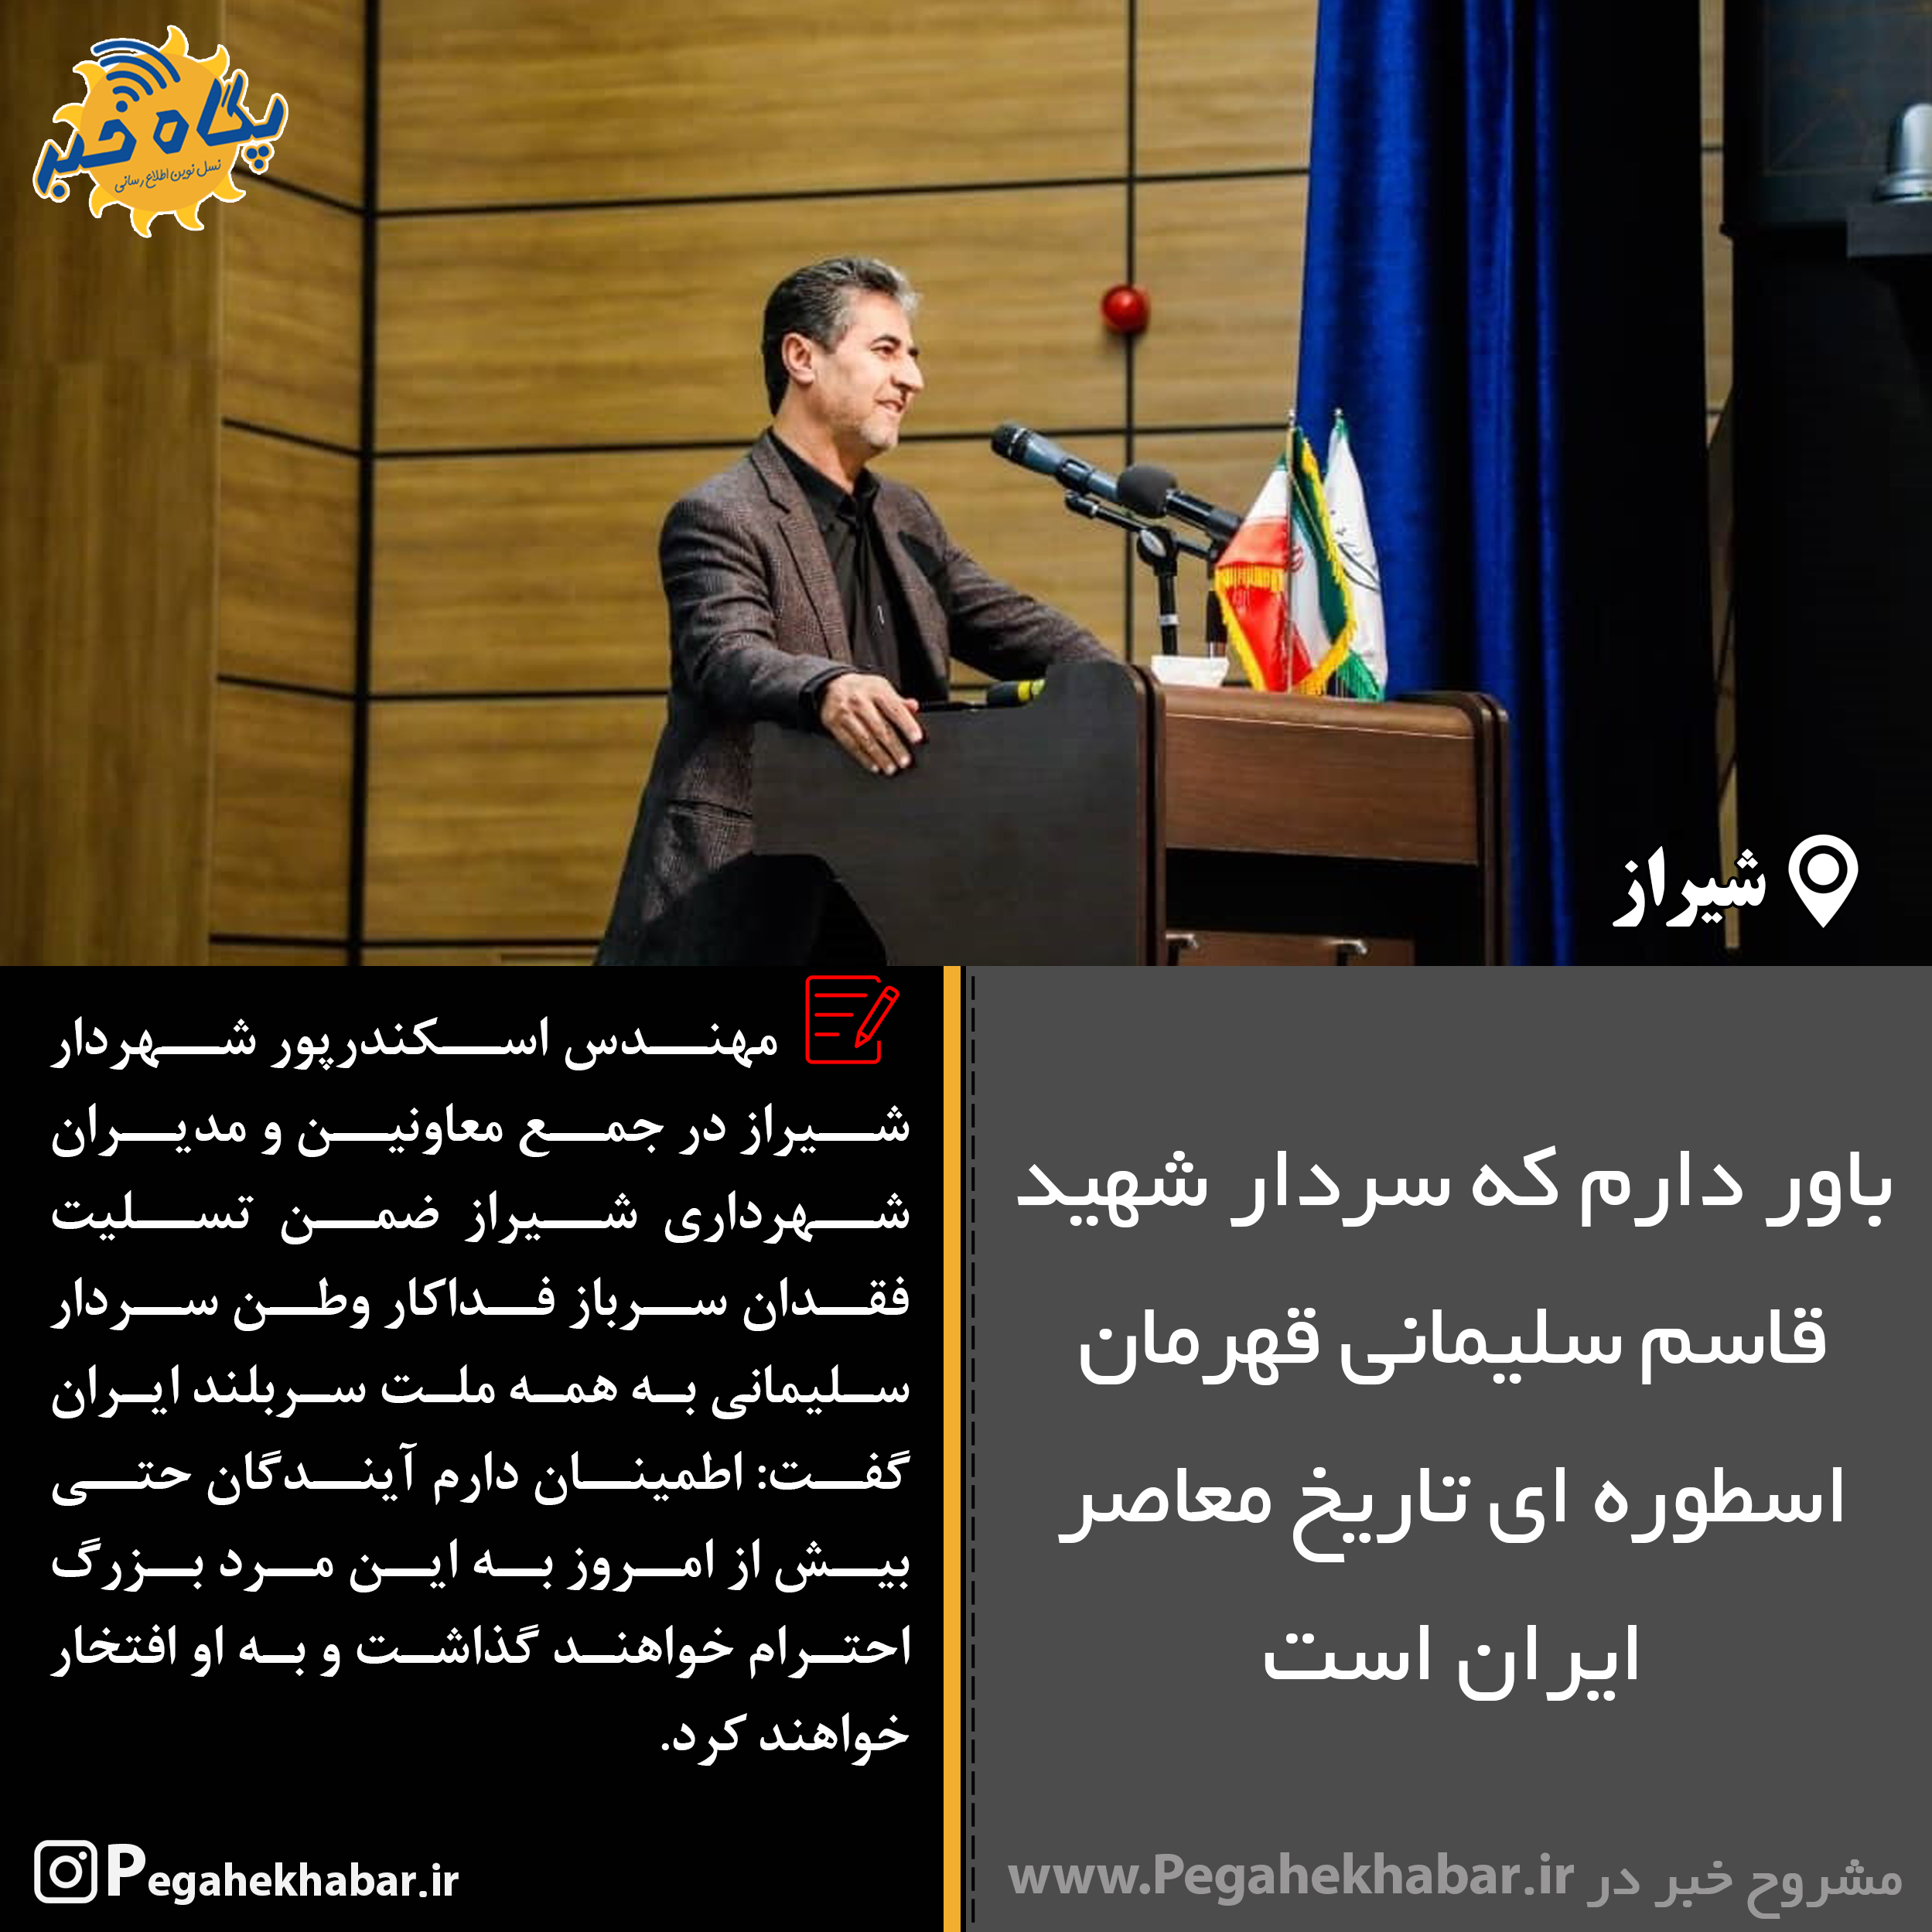 عکس نوشت|باور دارم که سردار شهید قاسم سلیمانی قهرمان اسطوره ای تاریخ معاصر ایران است